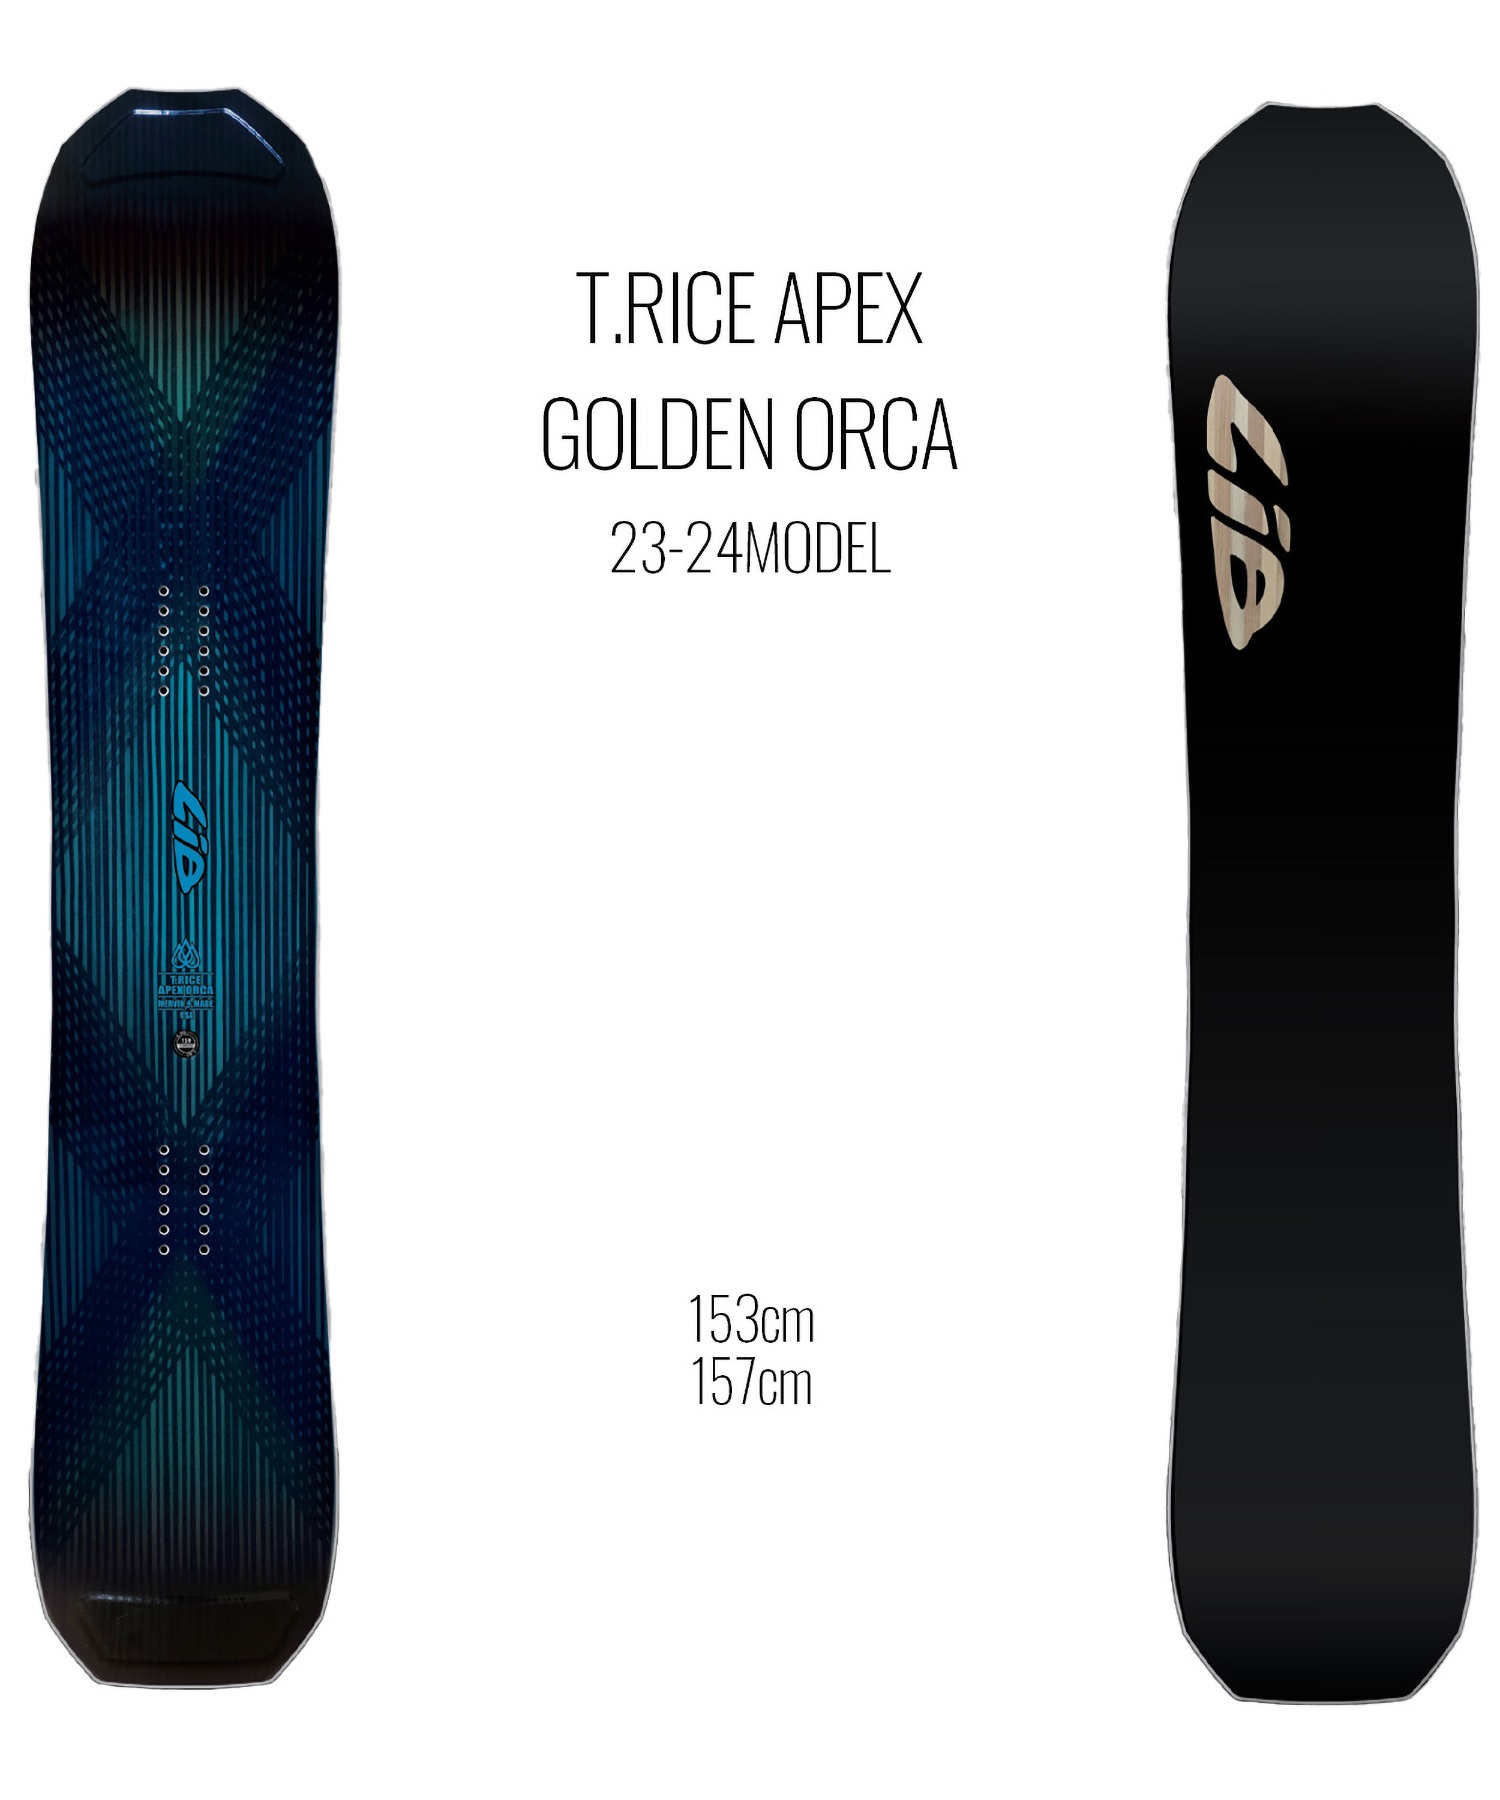 スノーボード 板 メンズ LIBTECH リブテック T-RICE APEX GOLDEN ORCA